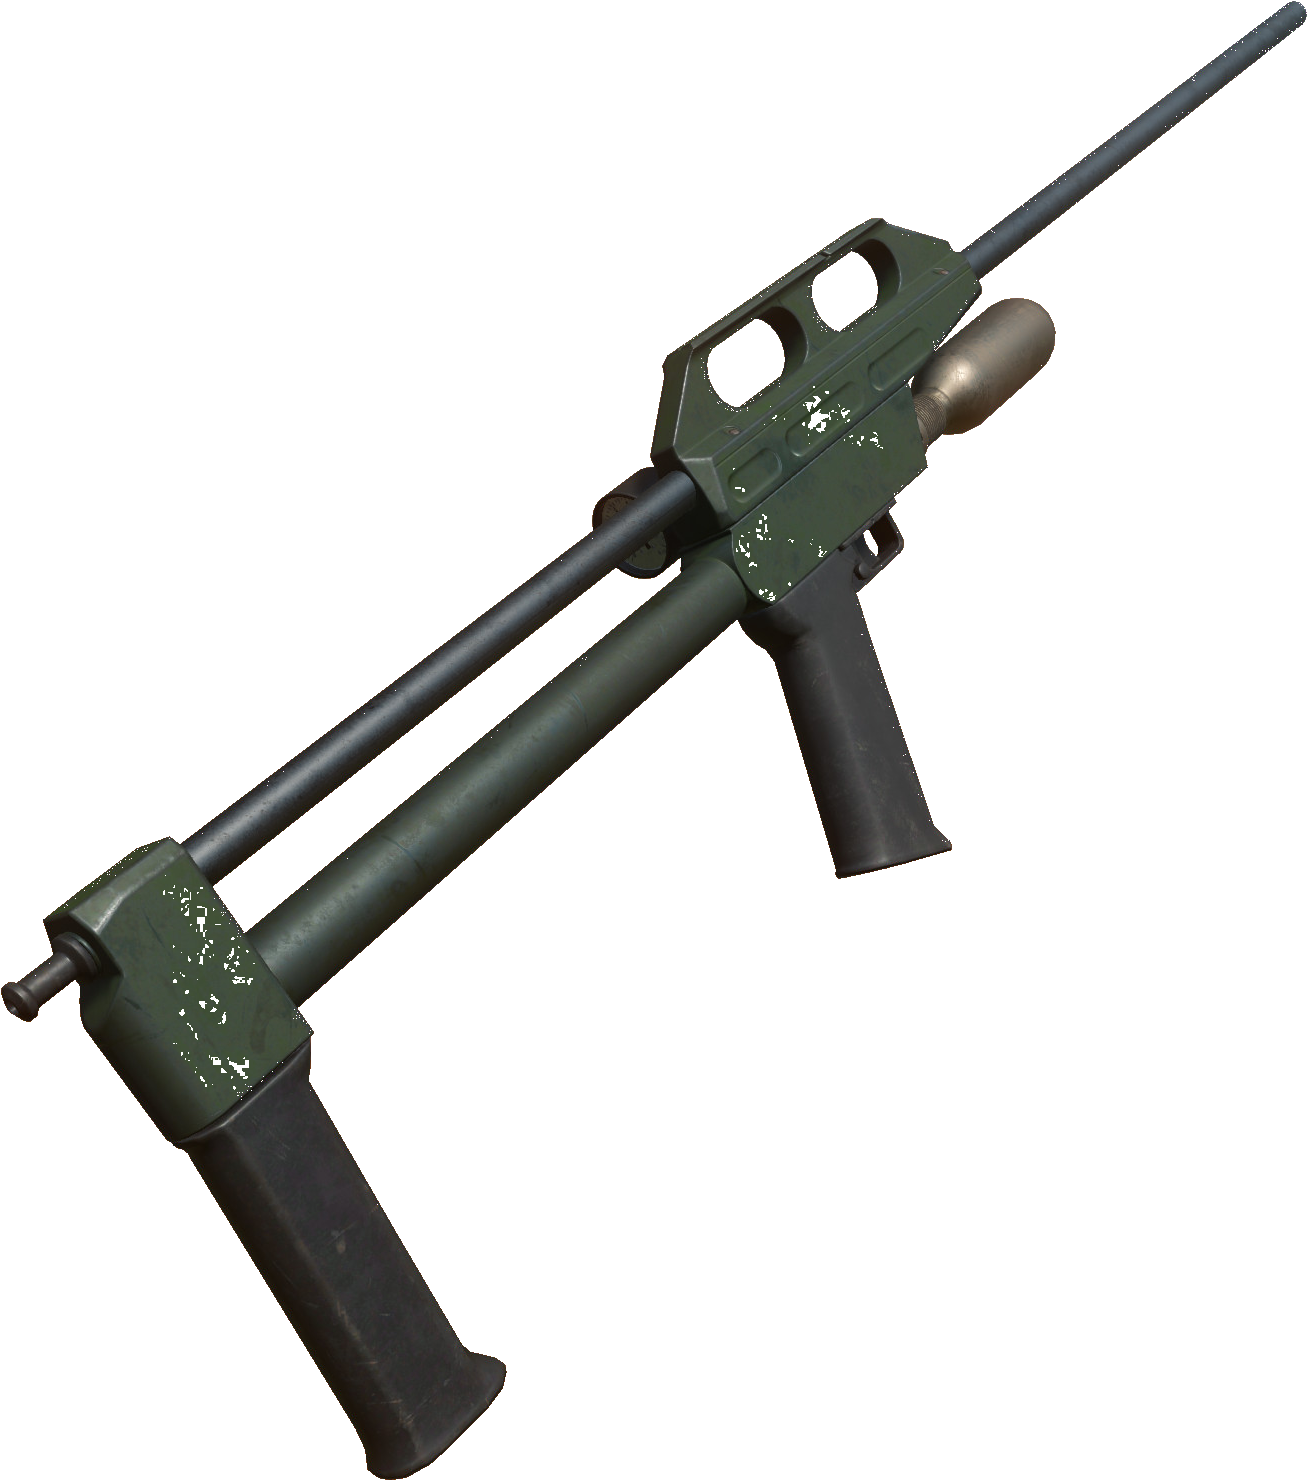 A Green Gun With A Long Barrel